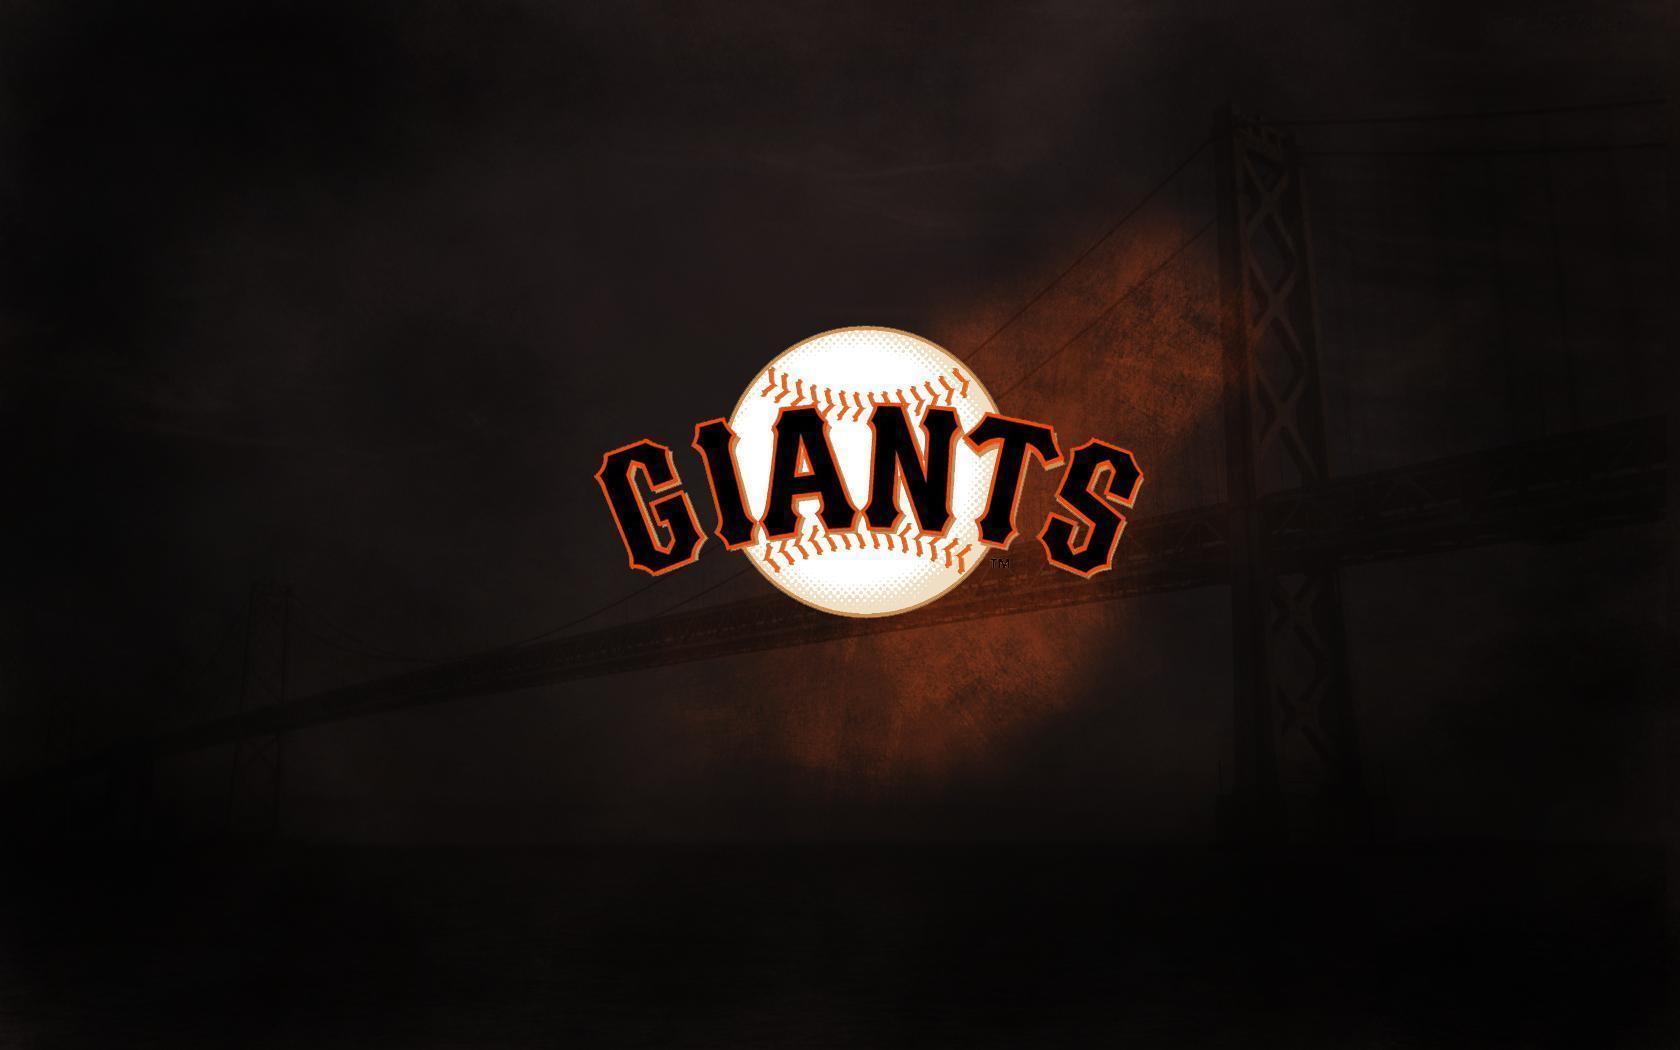 San Francisco Giants 1080P, 2K, 4K, 5K HD wallpapers free download